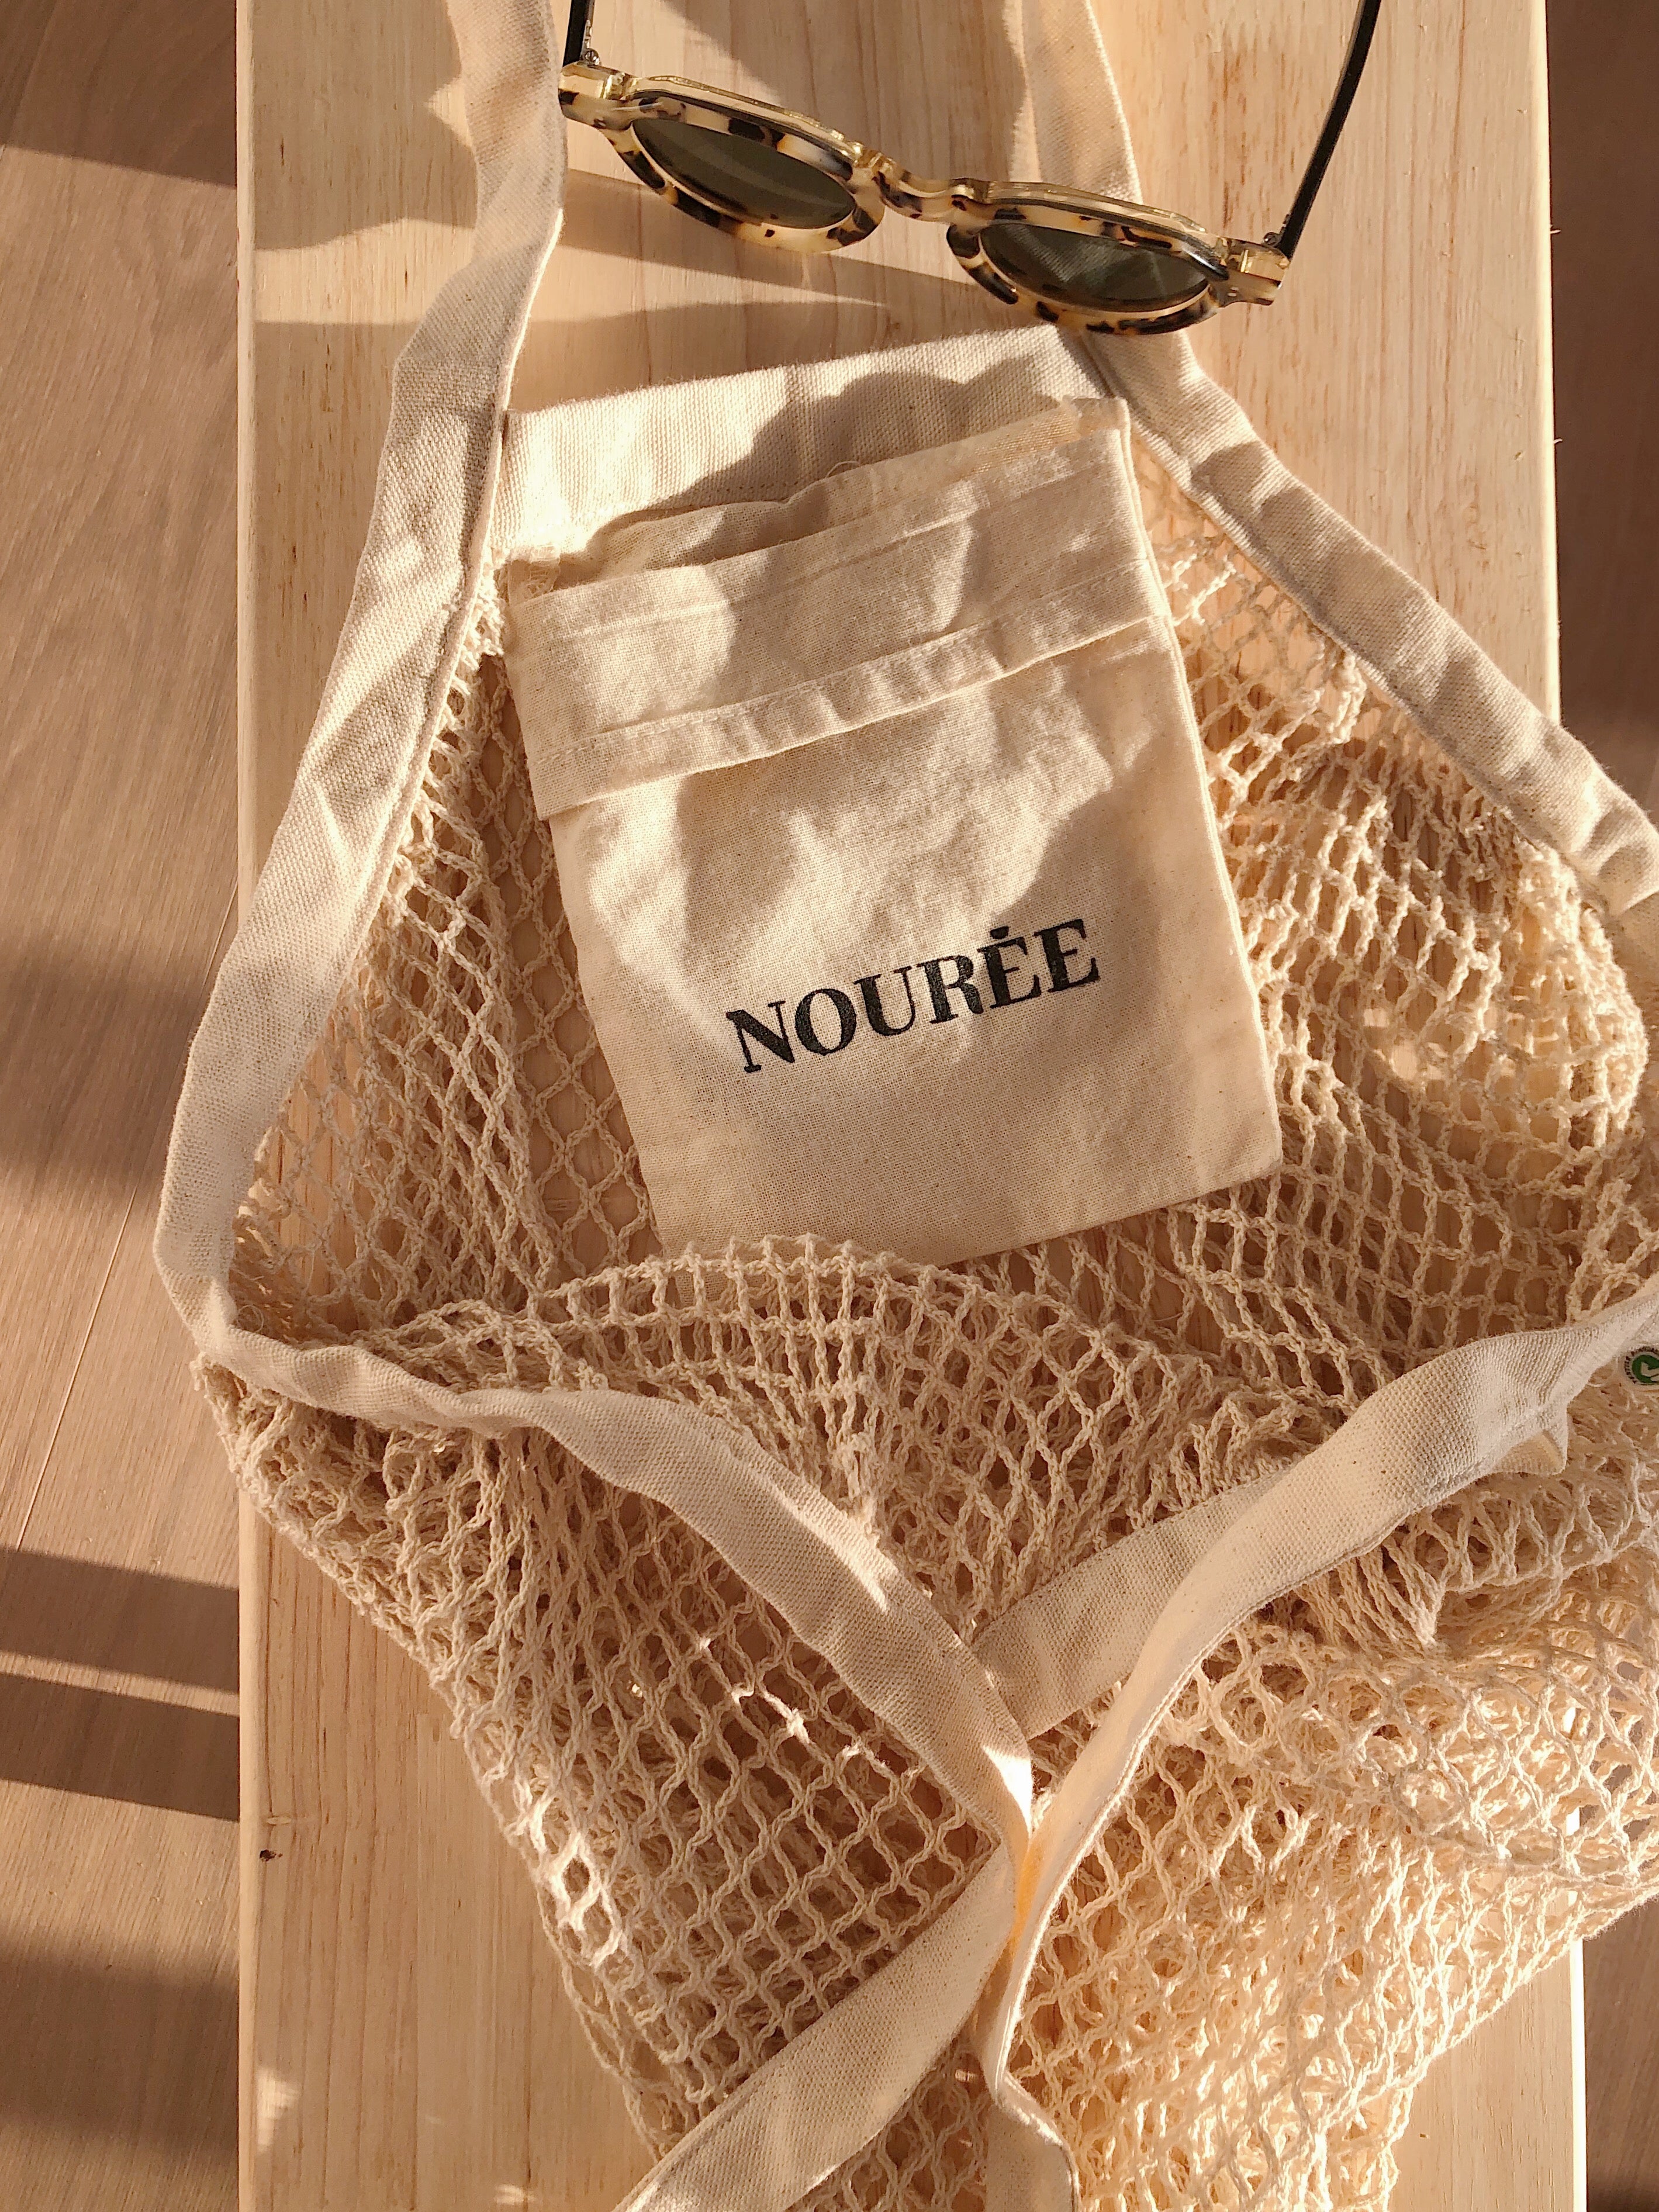 Le parfait sac filet – Nourée